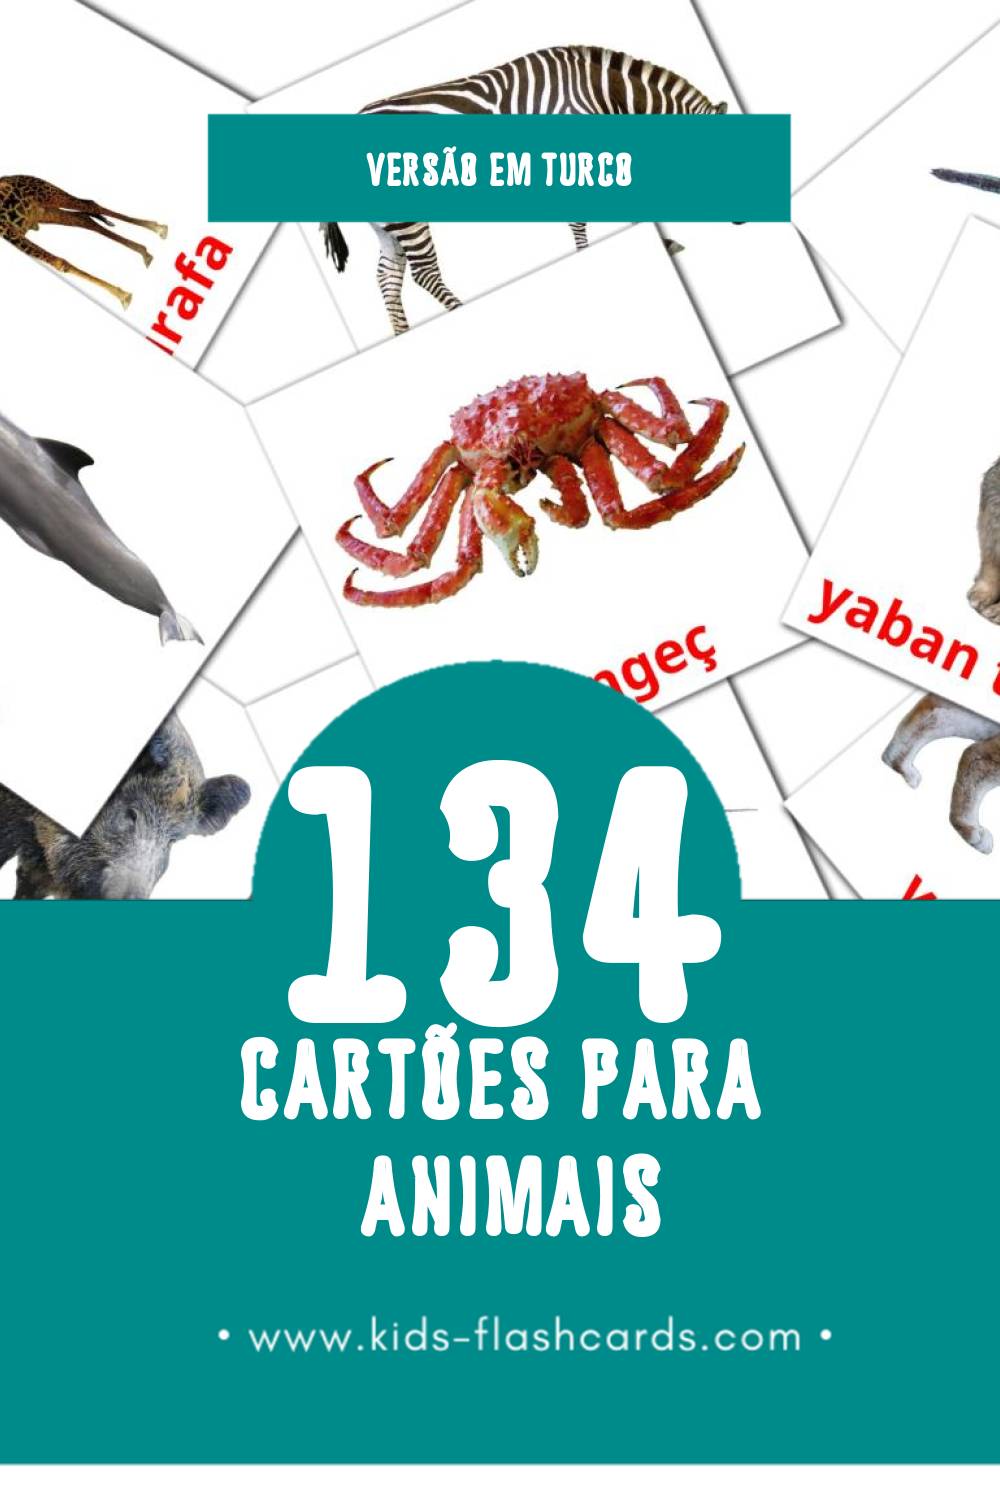 Flashcards de Hayvanlar Visuais para Toddlers (134 cartões em Turco)